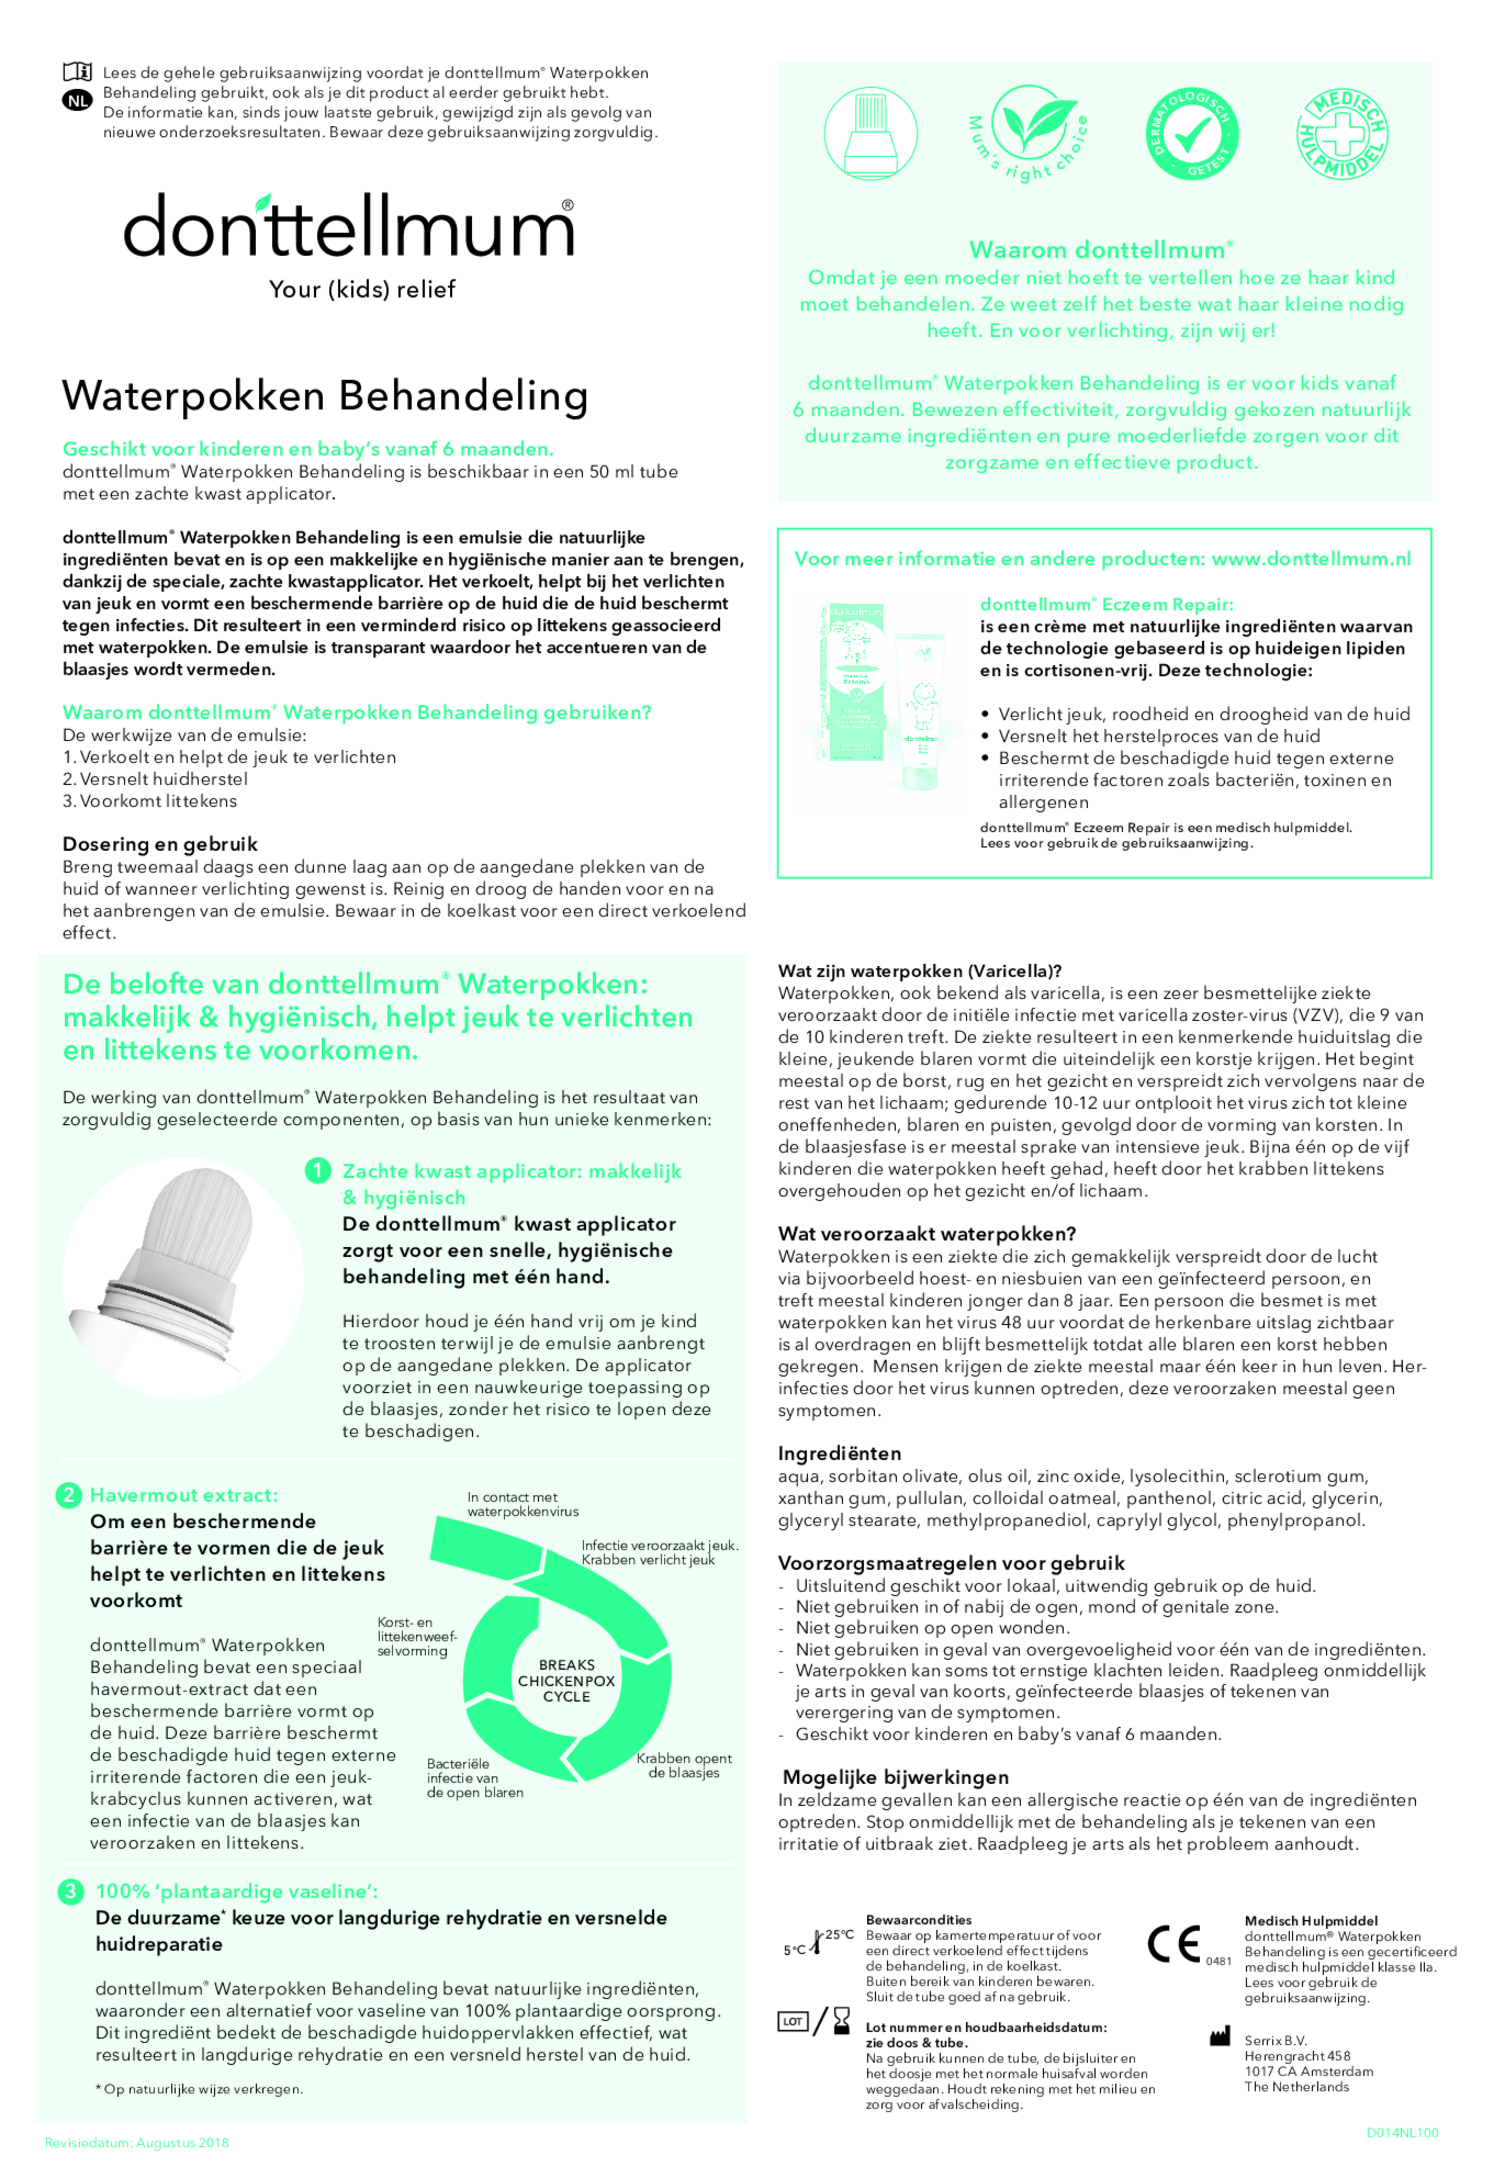 Donttellmum Combi Waterpokkenbehandeling + Inhalatiepleisters afbeelding van document #1, gebruiksaanwijzing